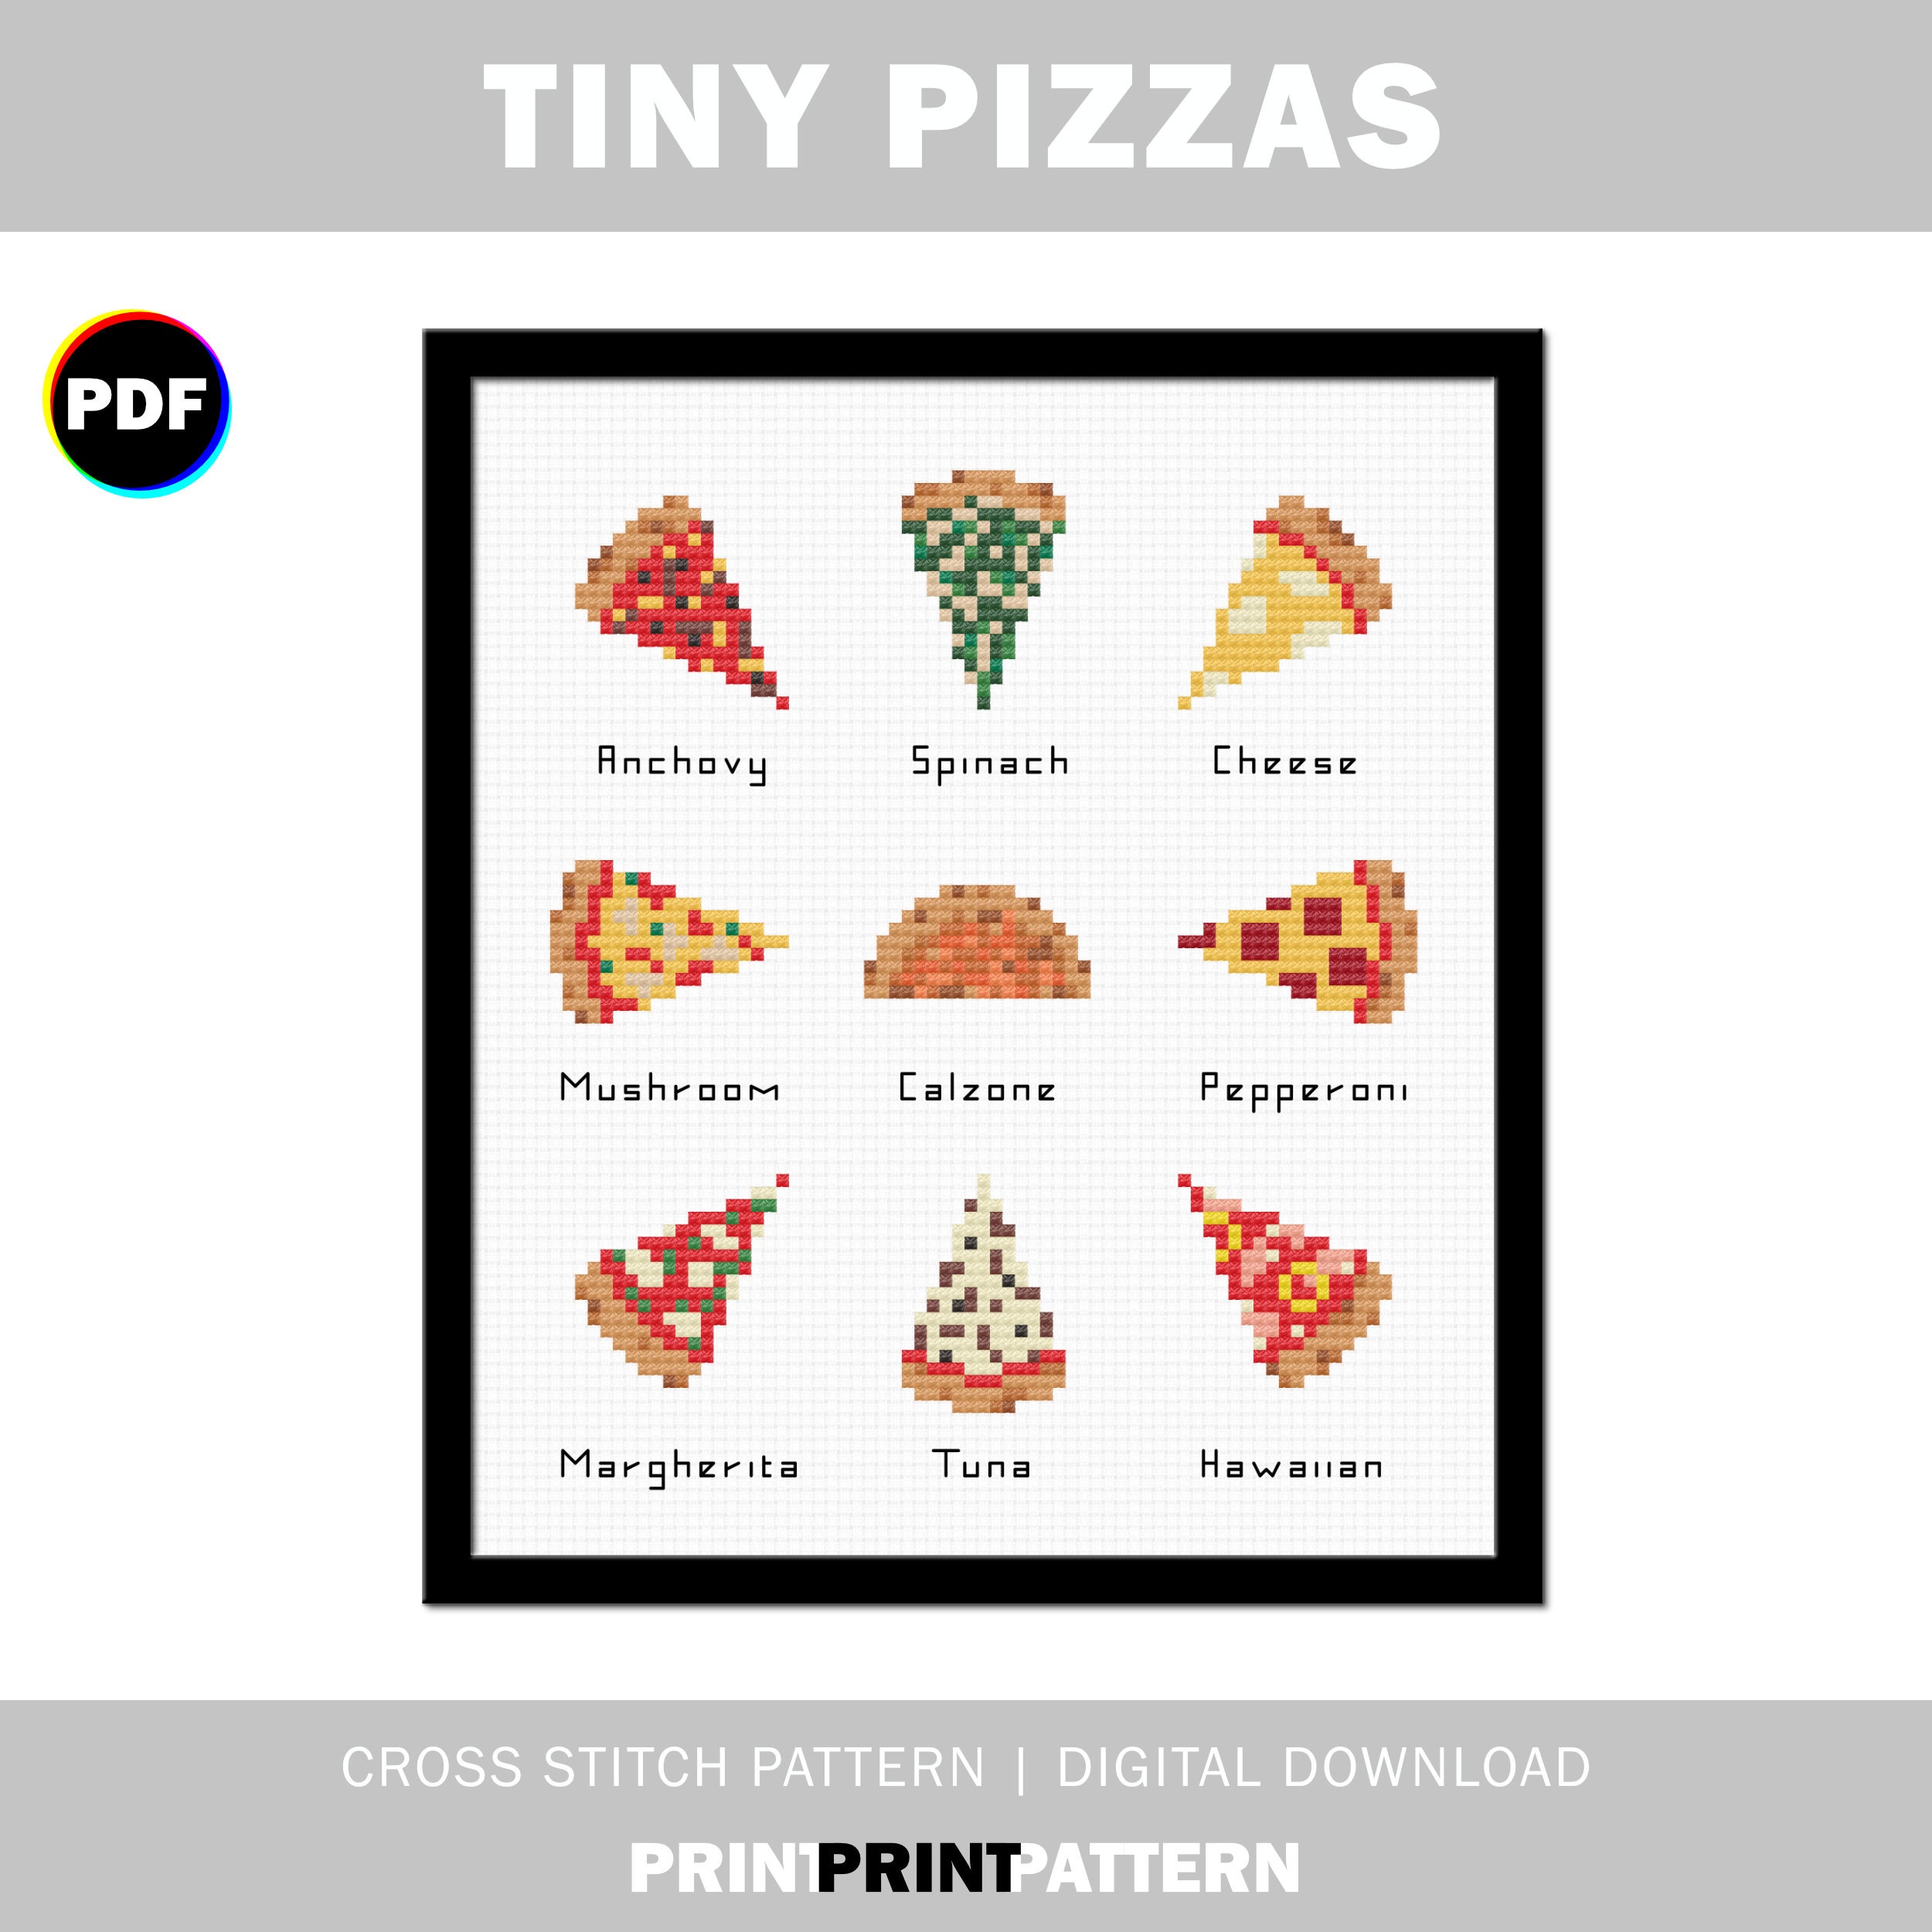 Mini Pizza Cross Stitch Kit